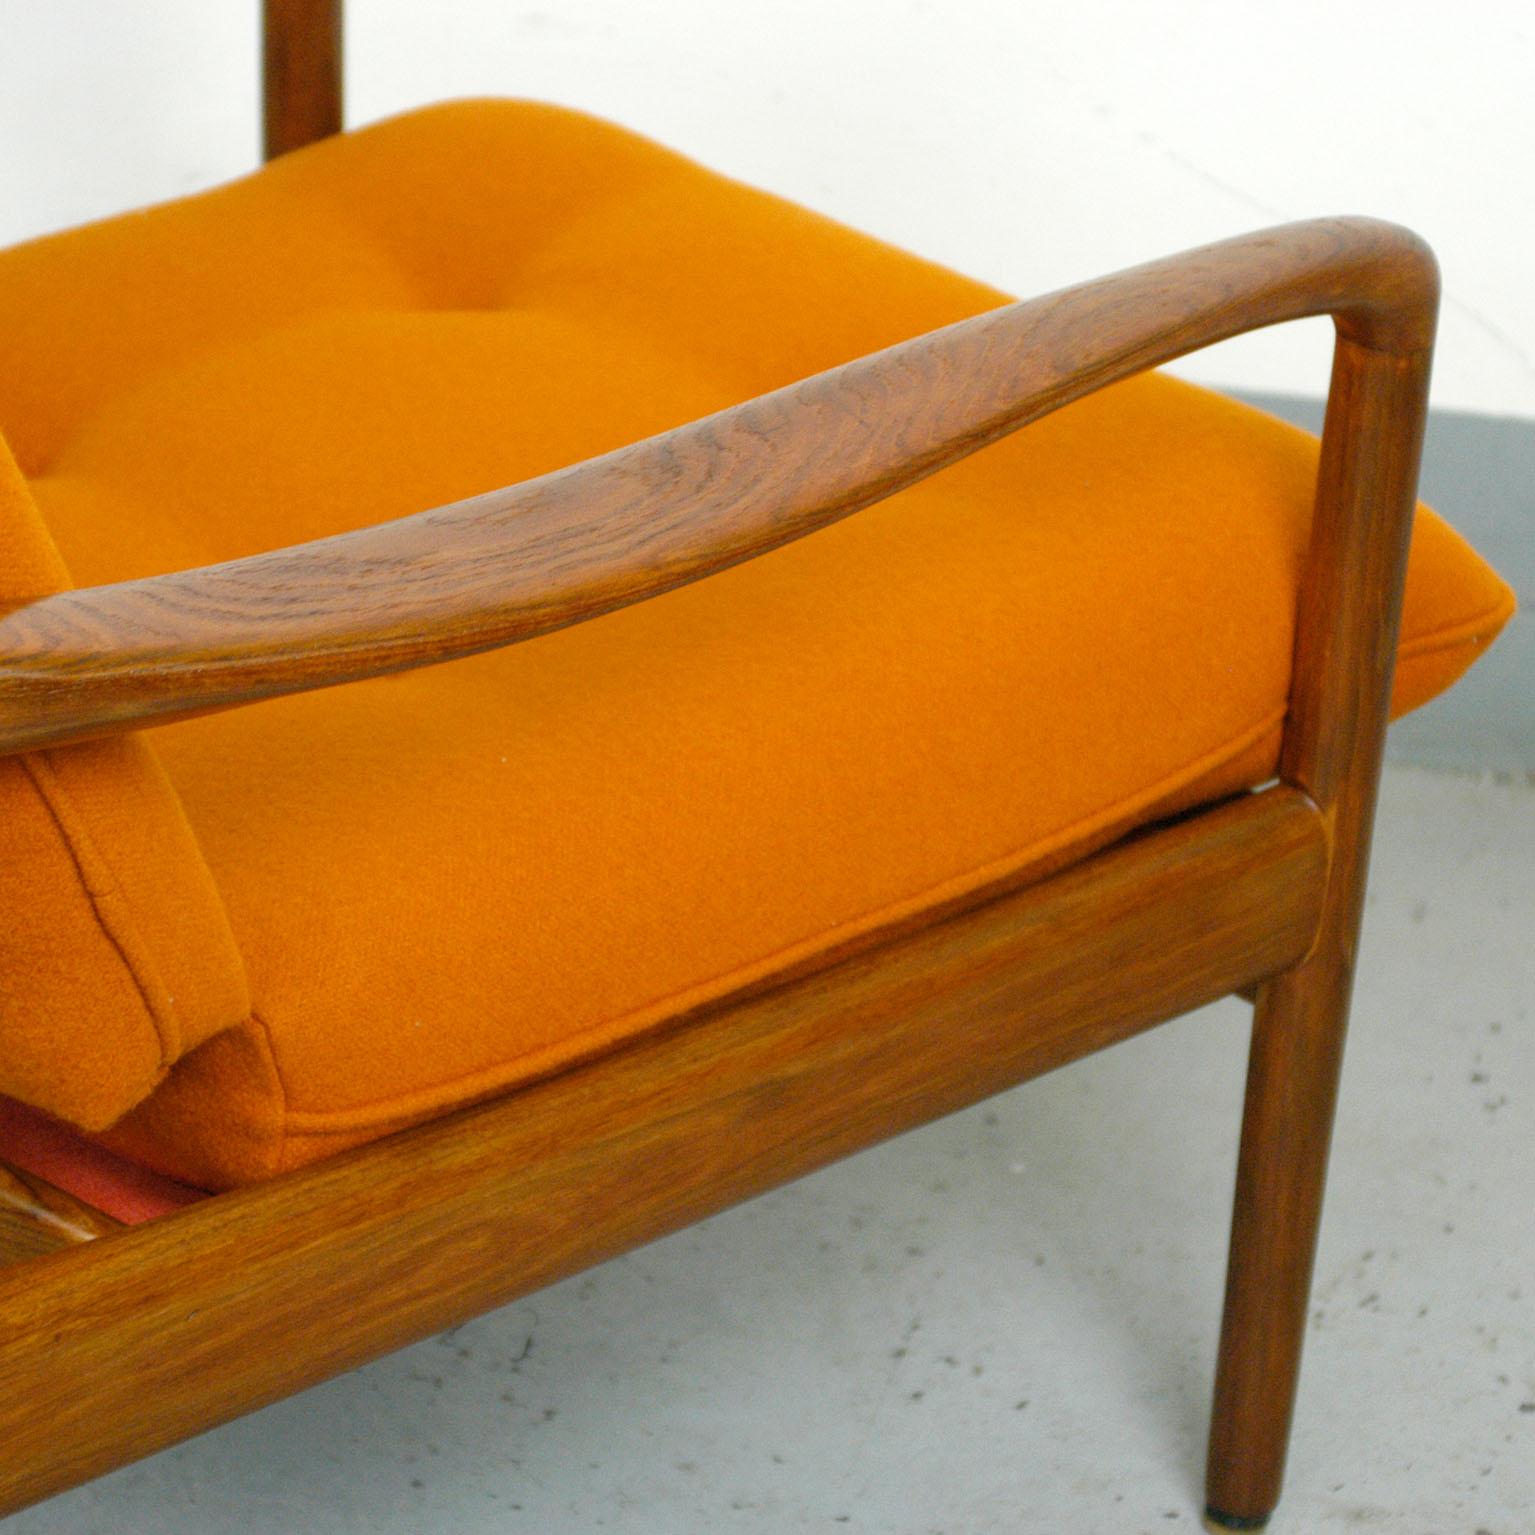 Midcentury Orange Teak Easy Chair by Knoll Antimott, Germany 1